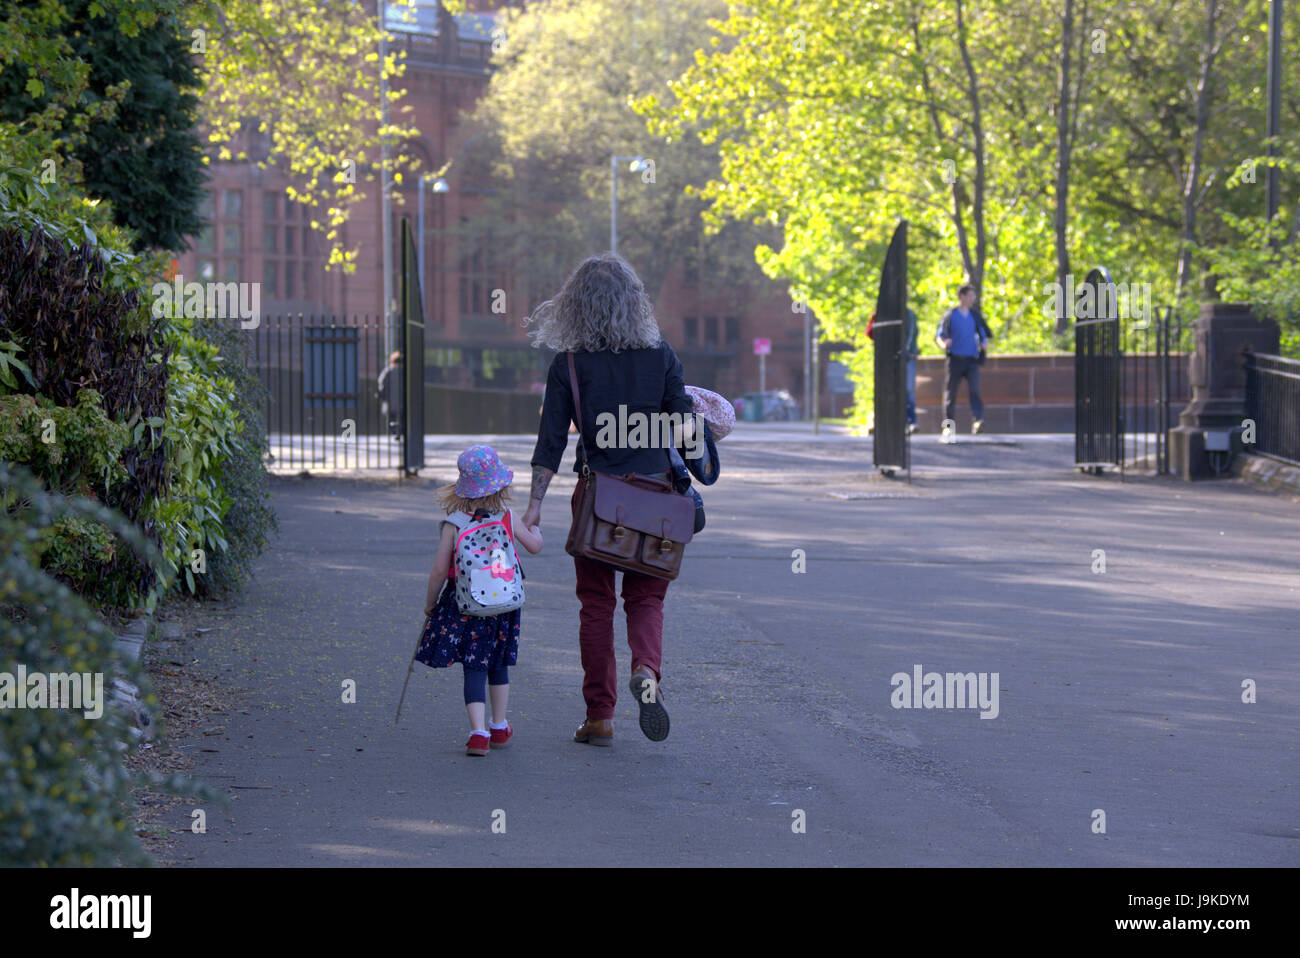 Glasgow Kelvingrove Park et petites scènes walking mère fille Banque D'Images